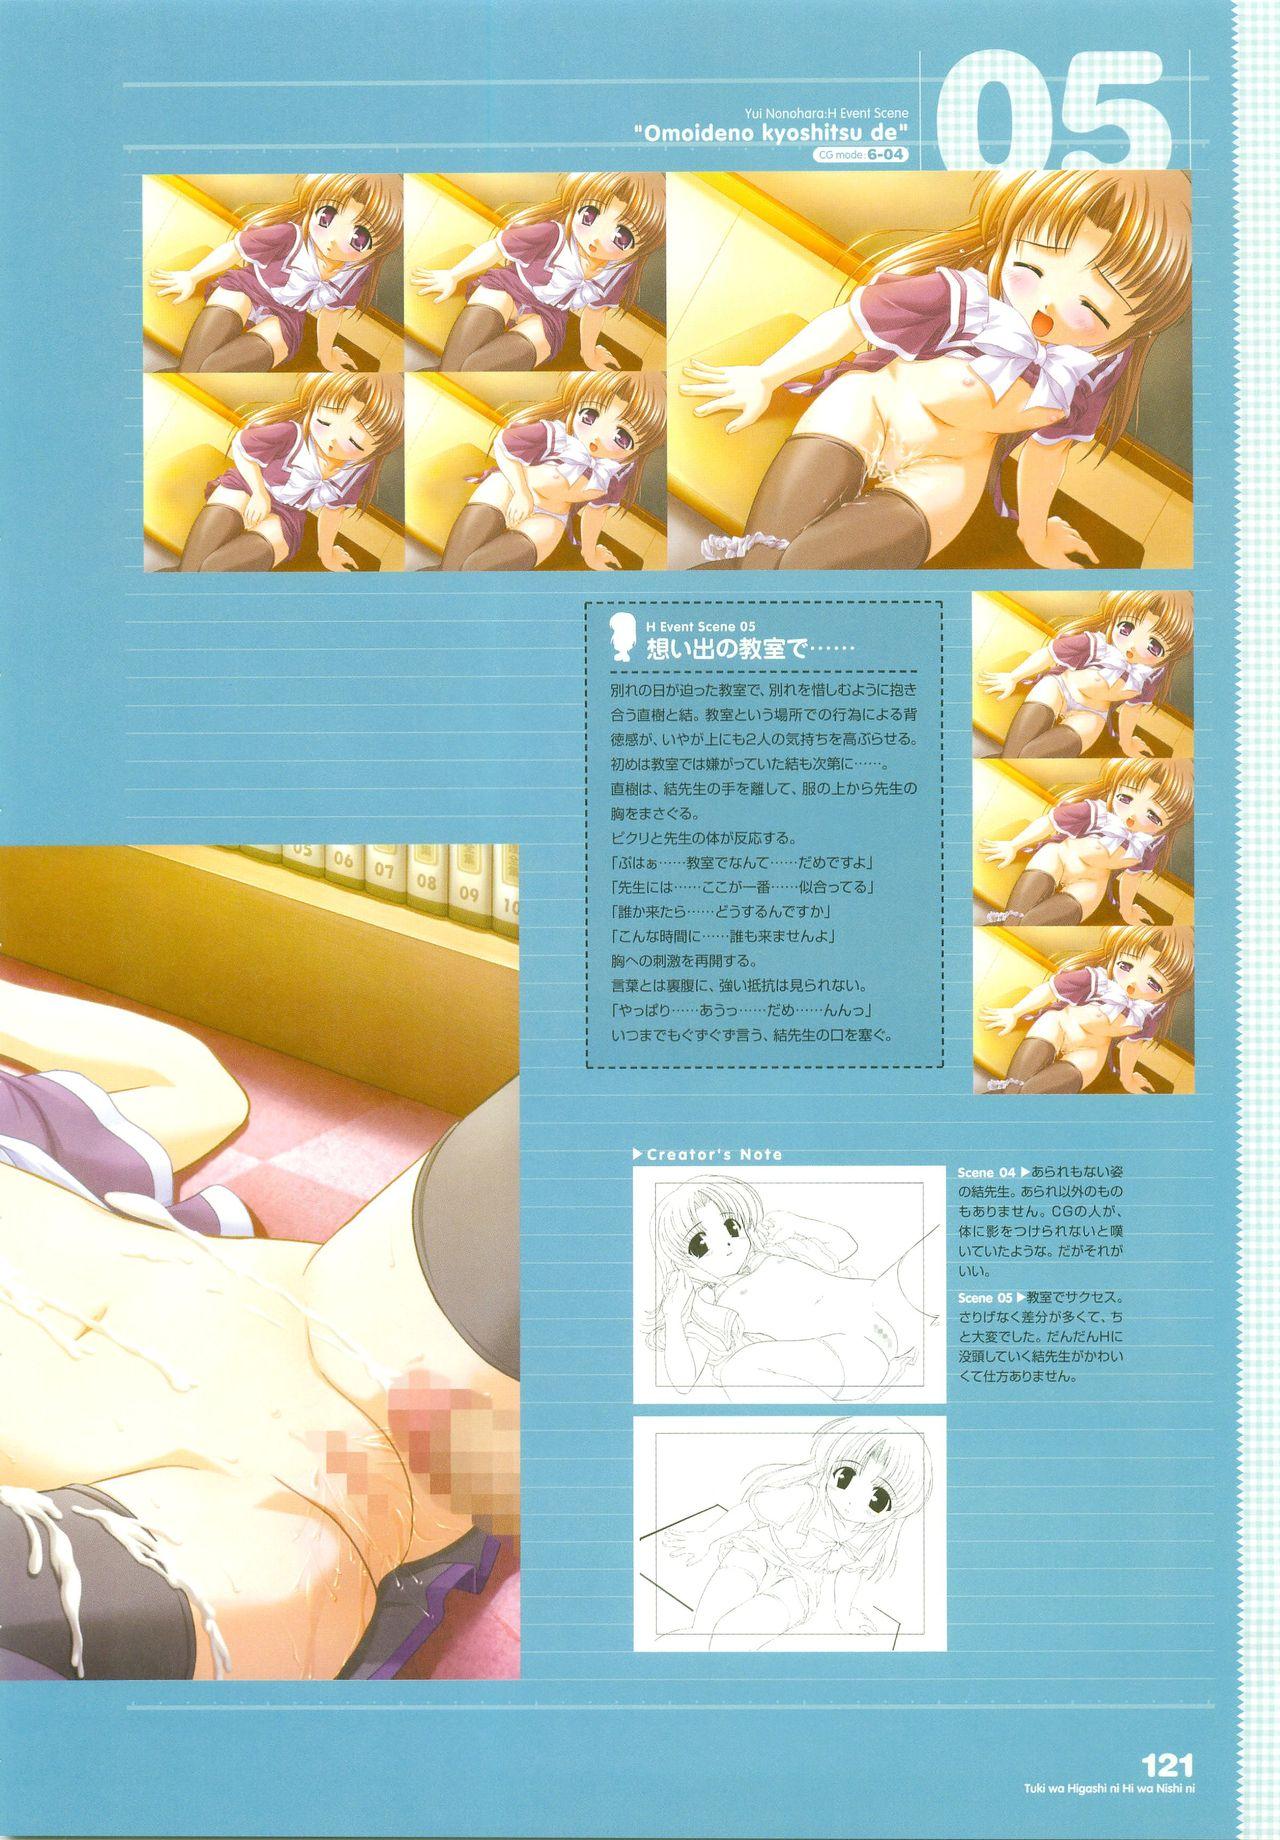 Tsuki wa Higashi ni Hi wa Nishi ni - Operation Sanctuary - Visual Fan Book Shokai Ban 152